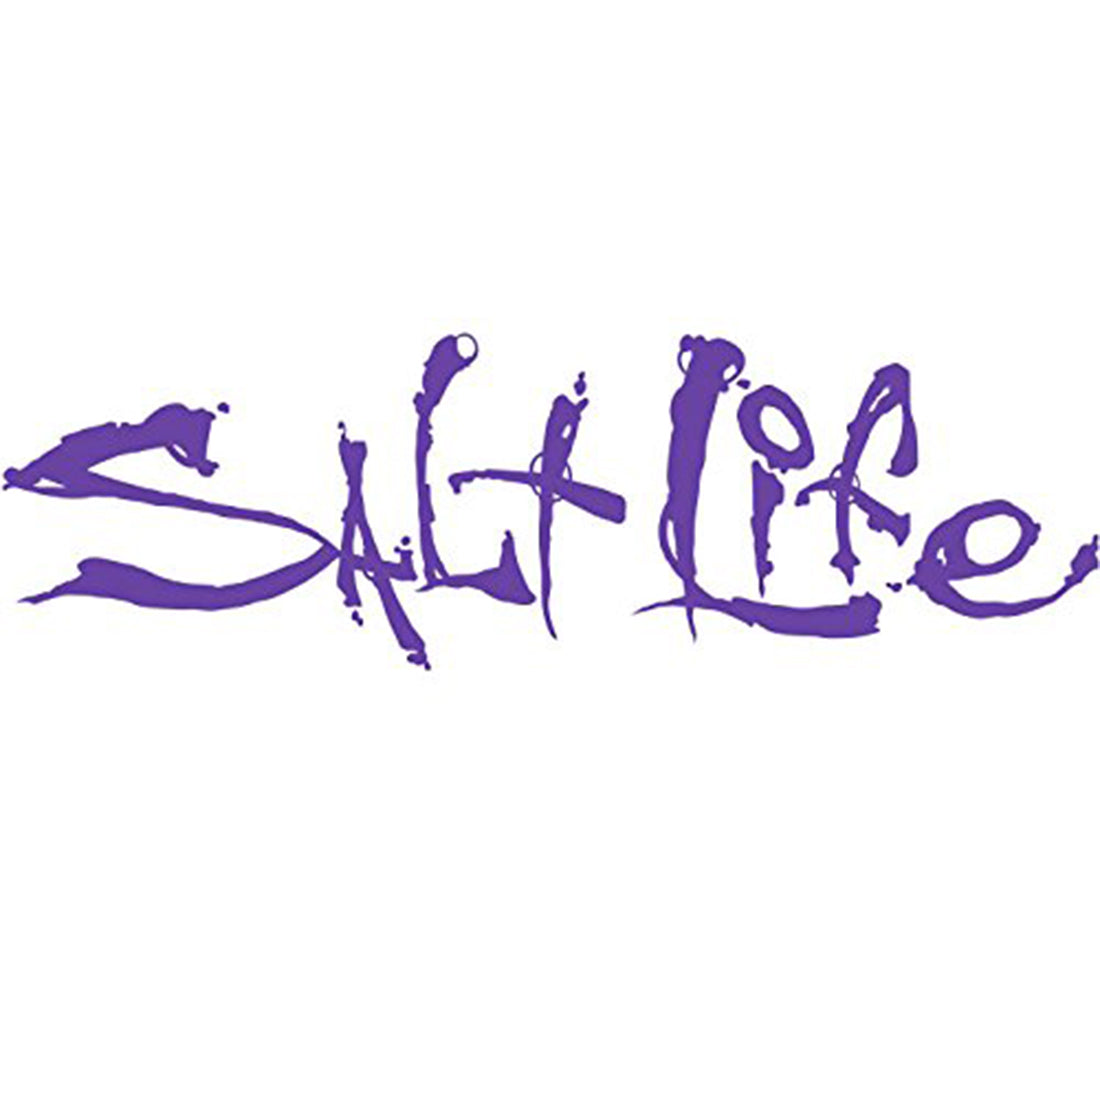 Salt Life Signature Decal